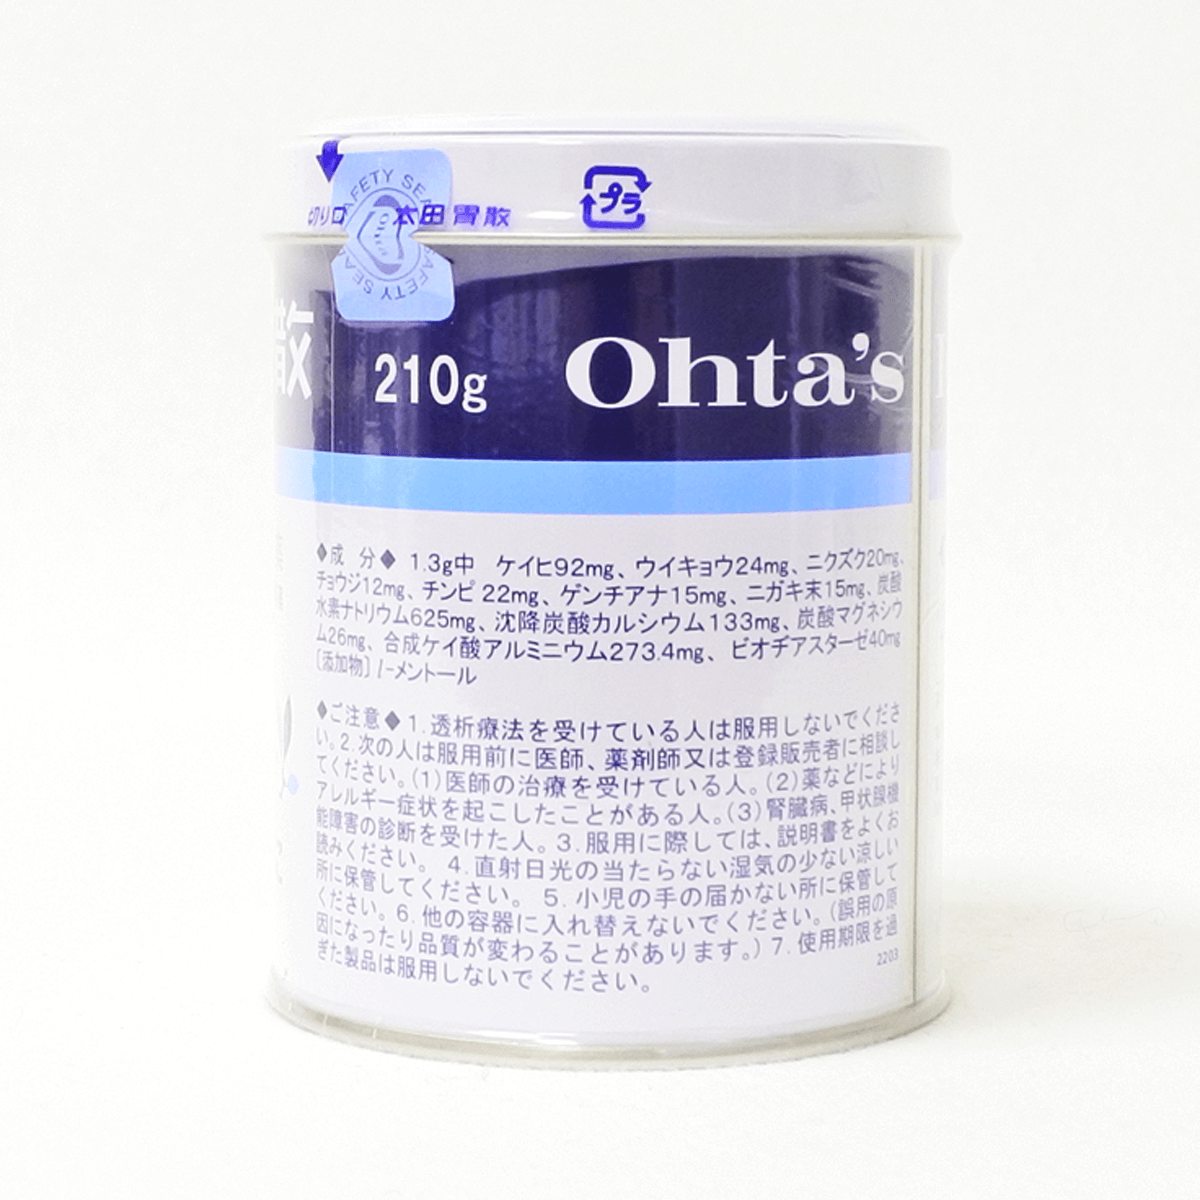 【第2类医药品】太田胃散 罐装粉末 210g